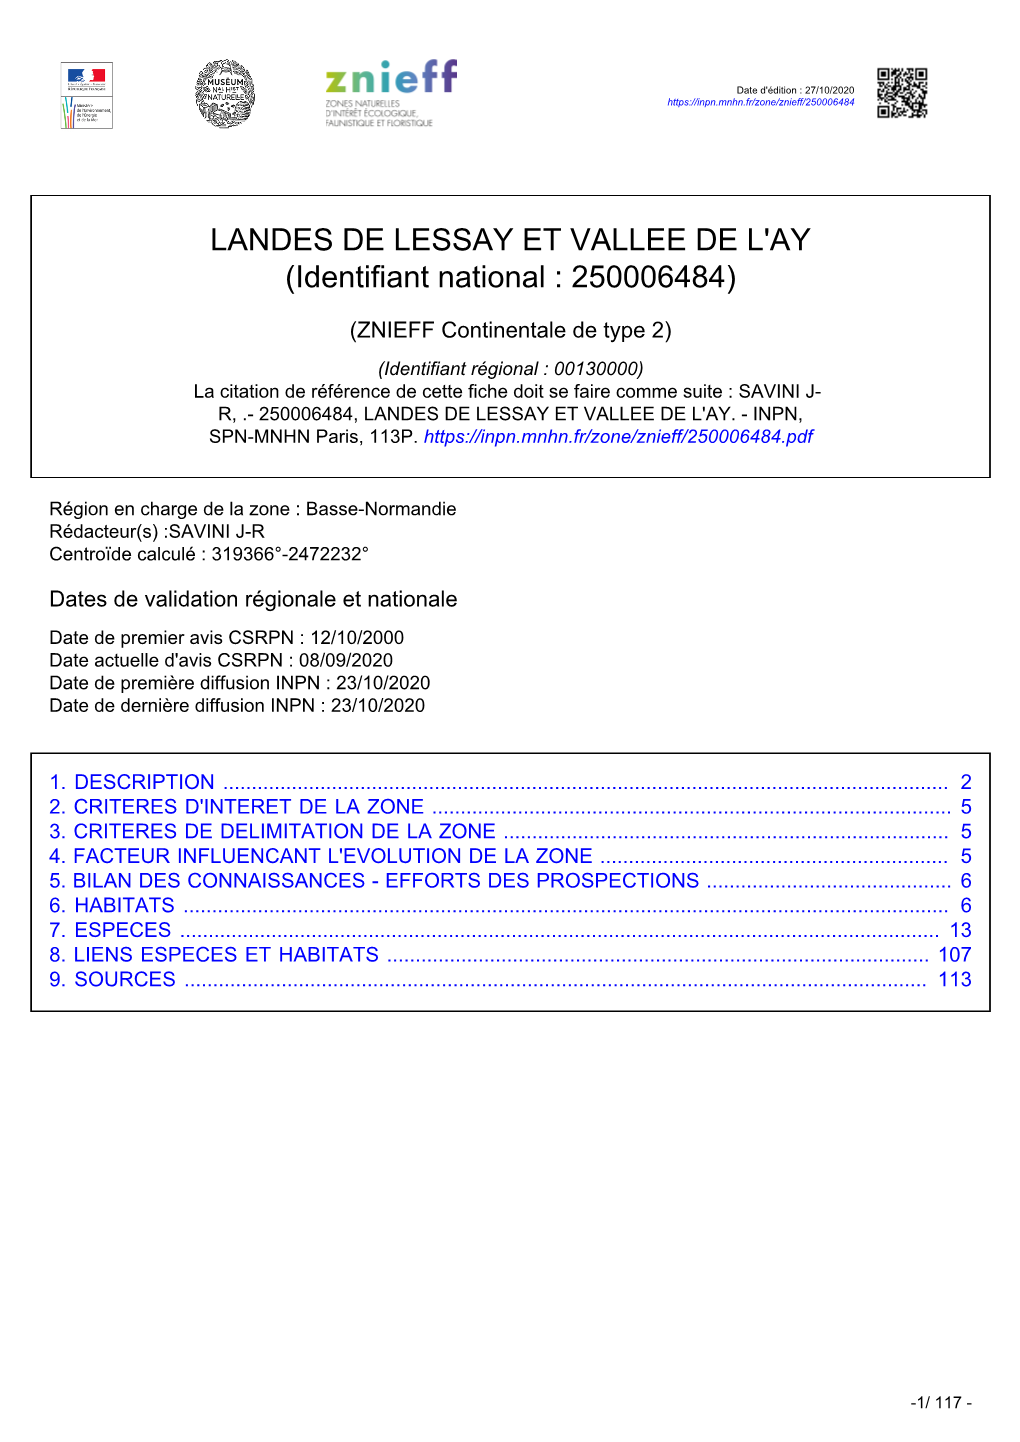 LANDES DE LESSAY ET VALLEE DE L'ay (Identifiant National : 250006484)